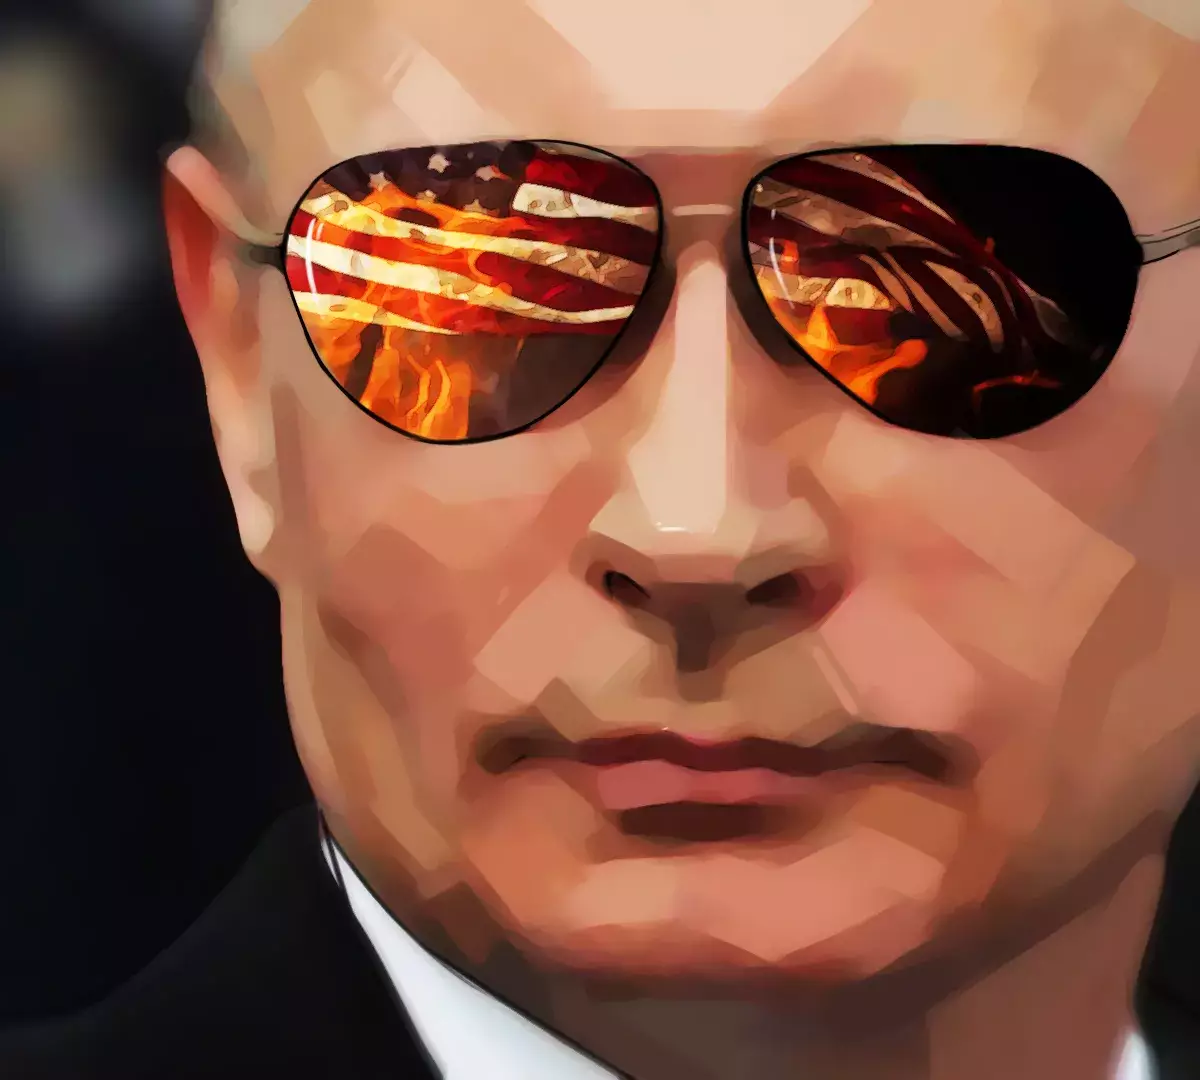 The Unz Review назвало событие, после которого Запад невзлюбил Путина